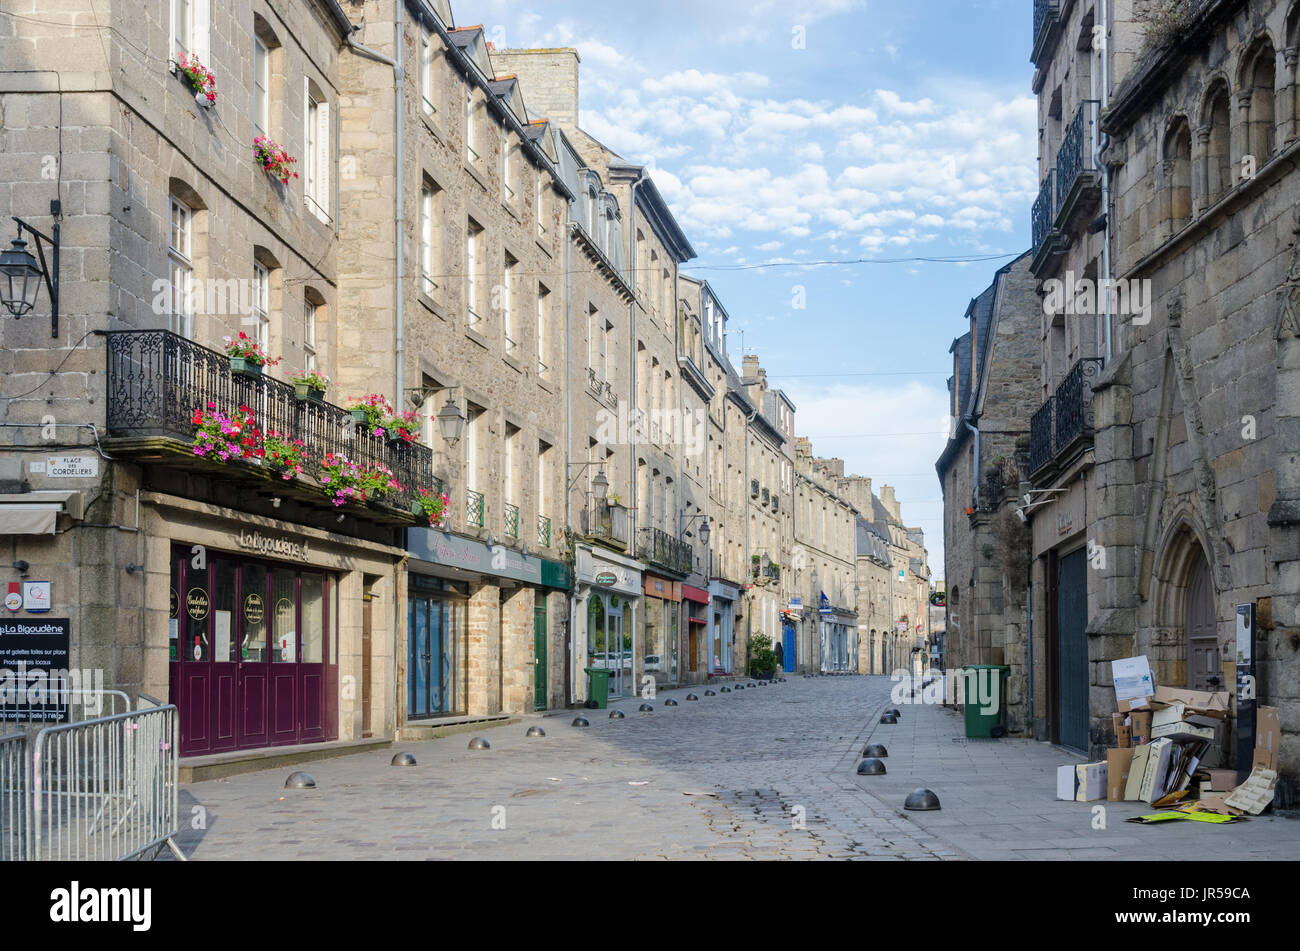 Dans les rues pavées de la ville historique de Dinan dans les cotes d'Armor, Bretagne, France Banque D'Images